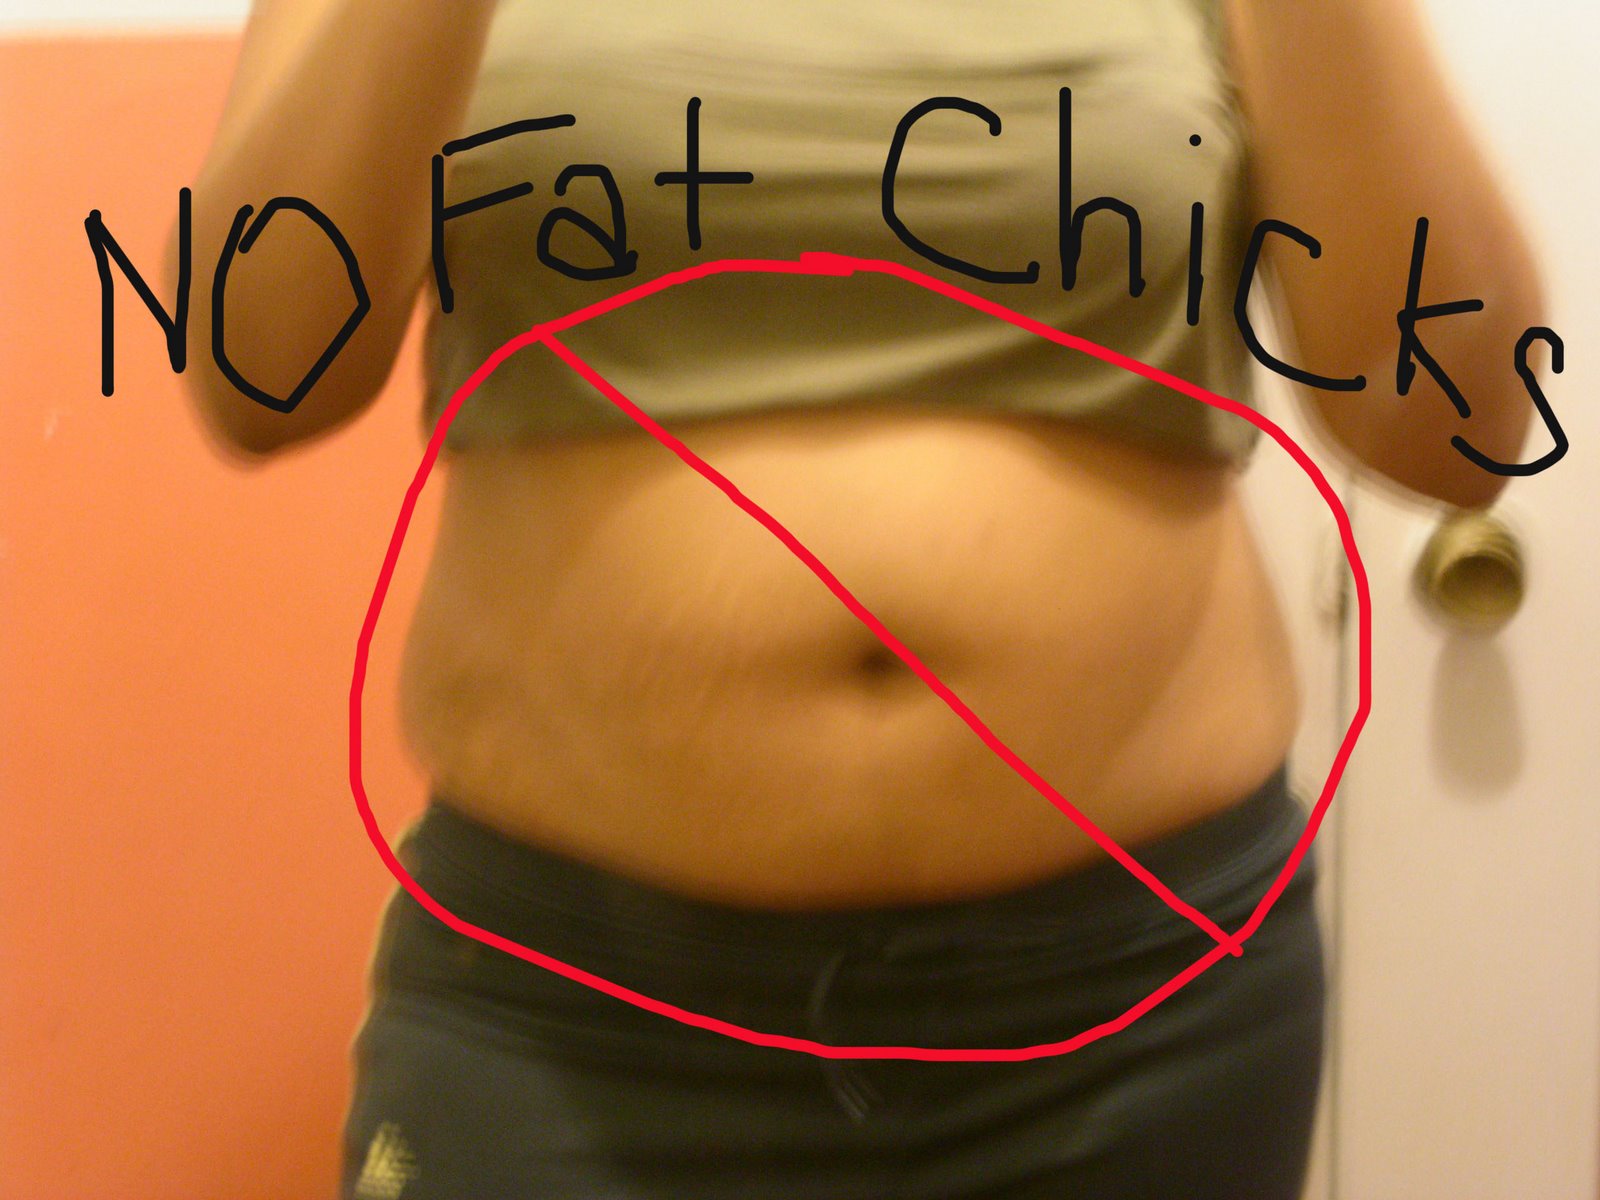 [no+fat+chicks.jpg]